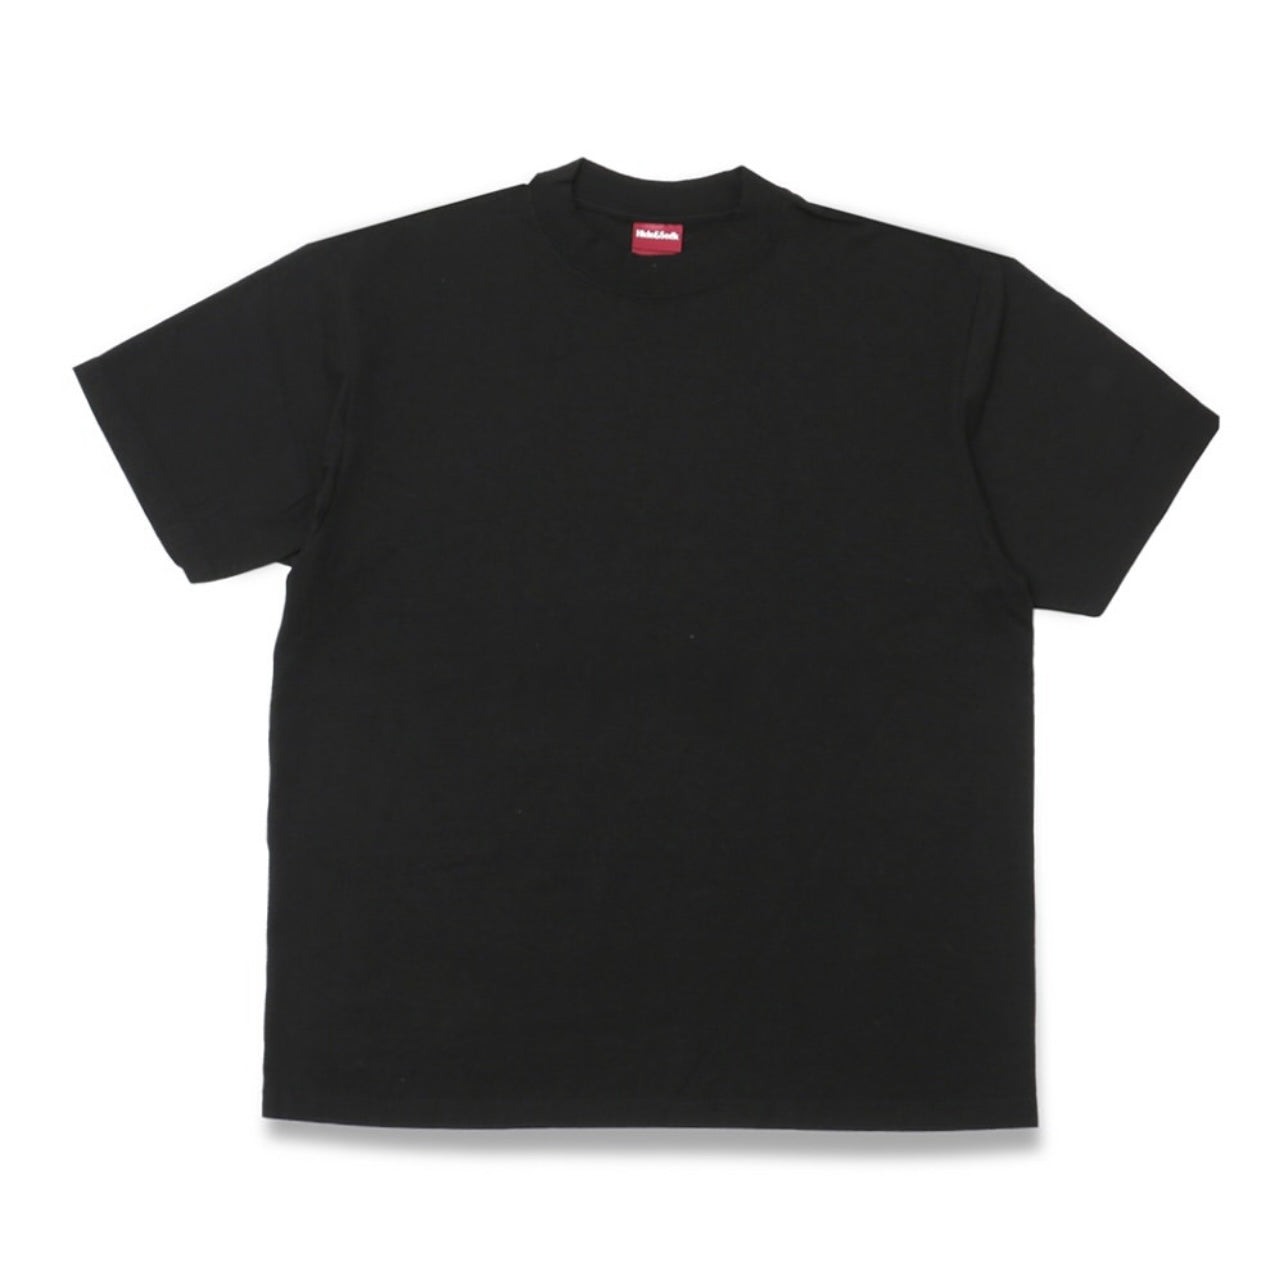 HIDE AND SEEK ハイドアンドシーク / Logo S/S Tee-1  big Silhouette (24ss) ロゴTシャツ 1 ビッグシルエット / ブラック